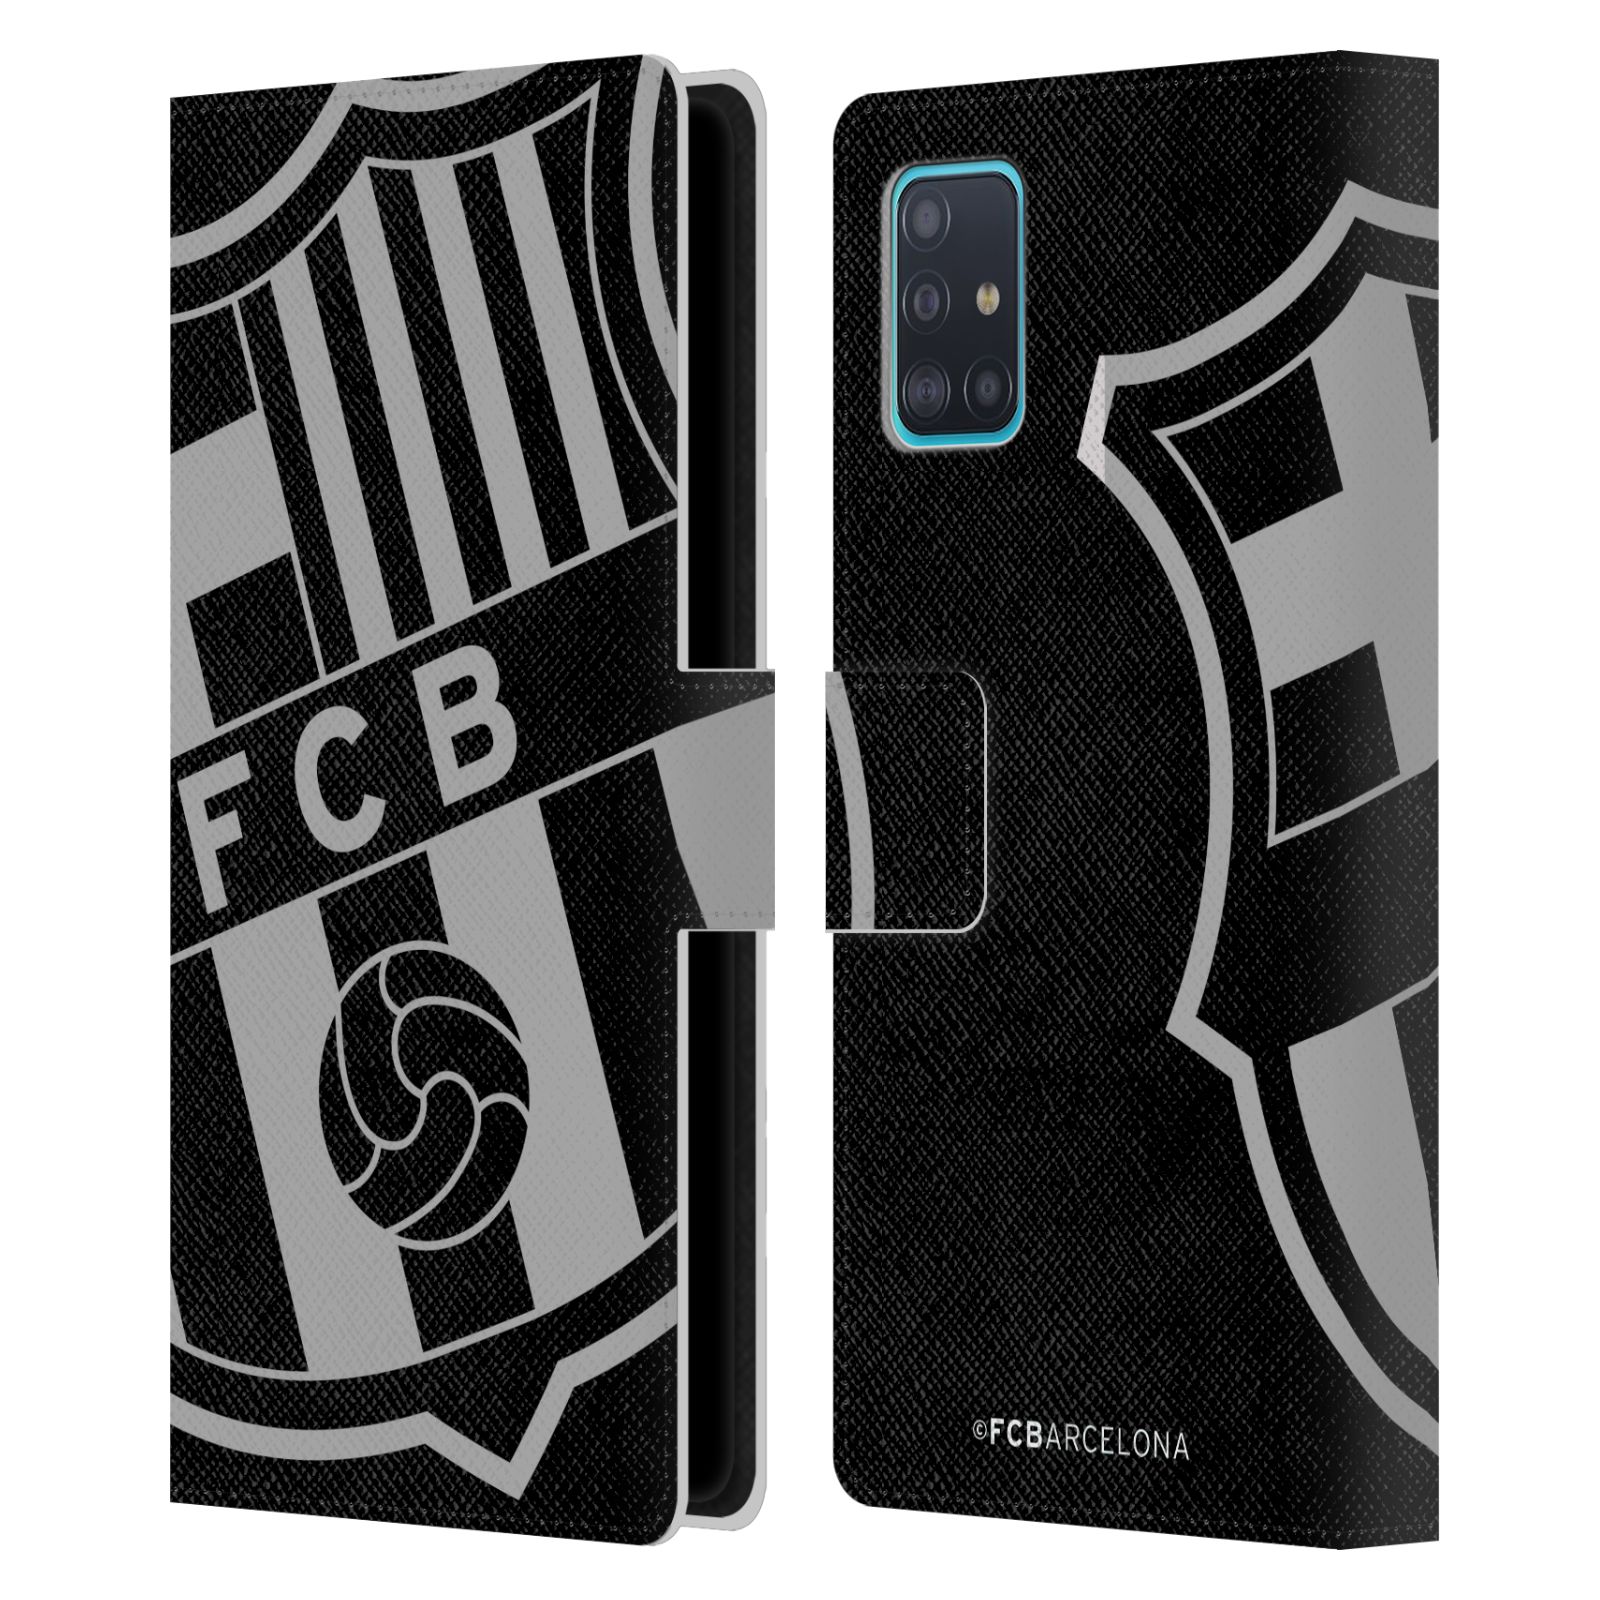 Pouzdro na mobil Samsung Galaxy A51 - HEAD CASE - FC Barcelona - černošedé logo